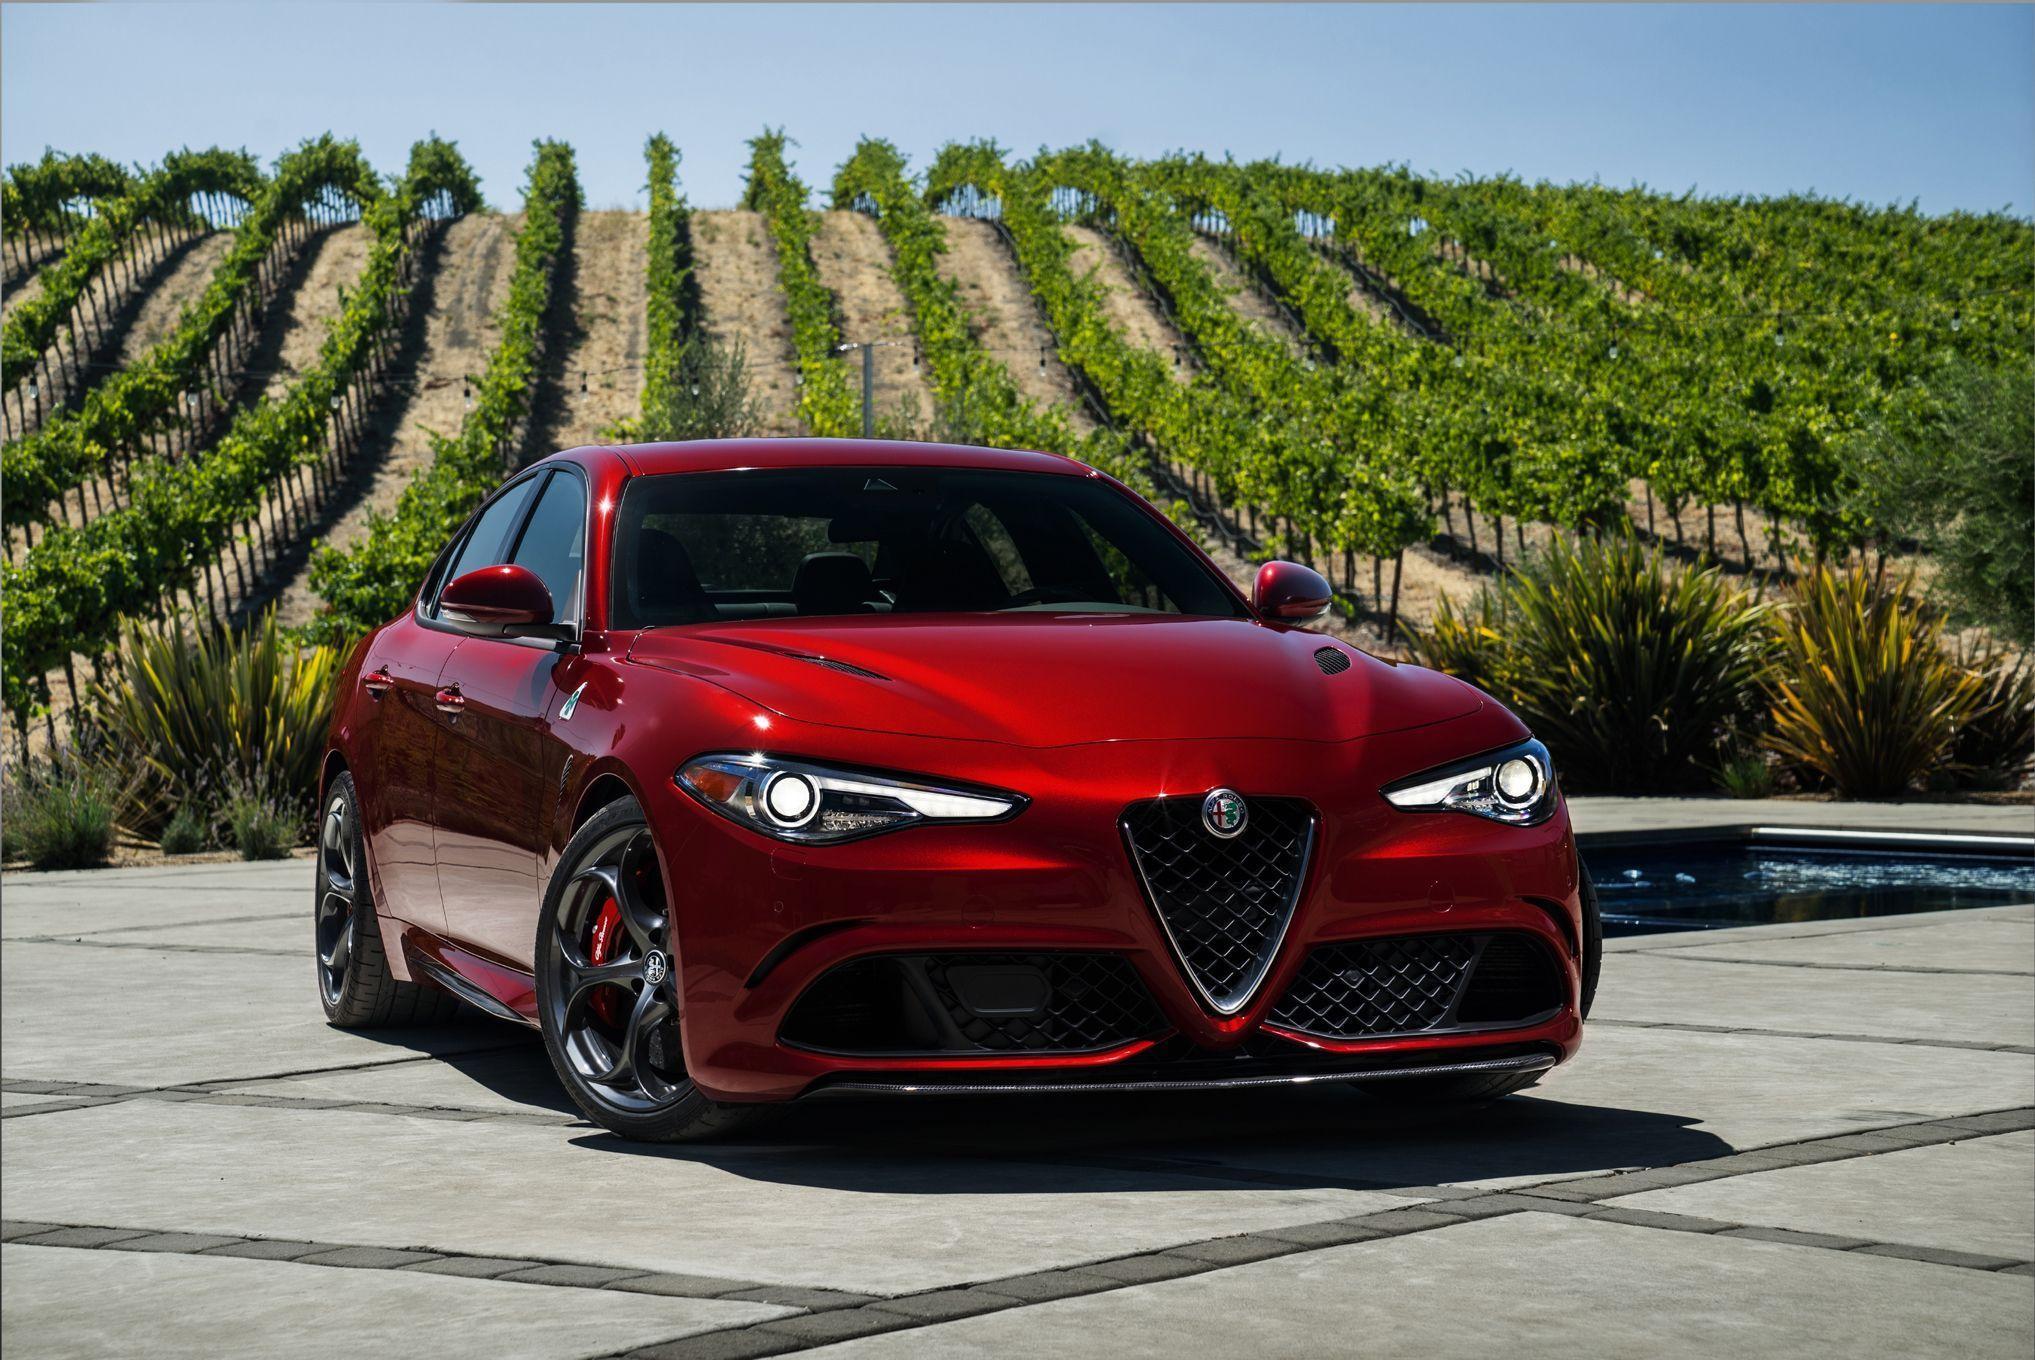 Alfa Romeo Giulia Makes U.S. Debut at L.A. Auto Show